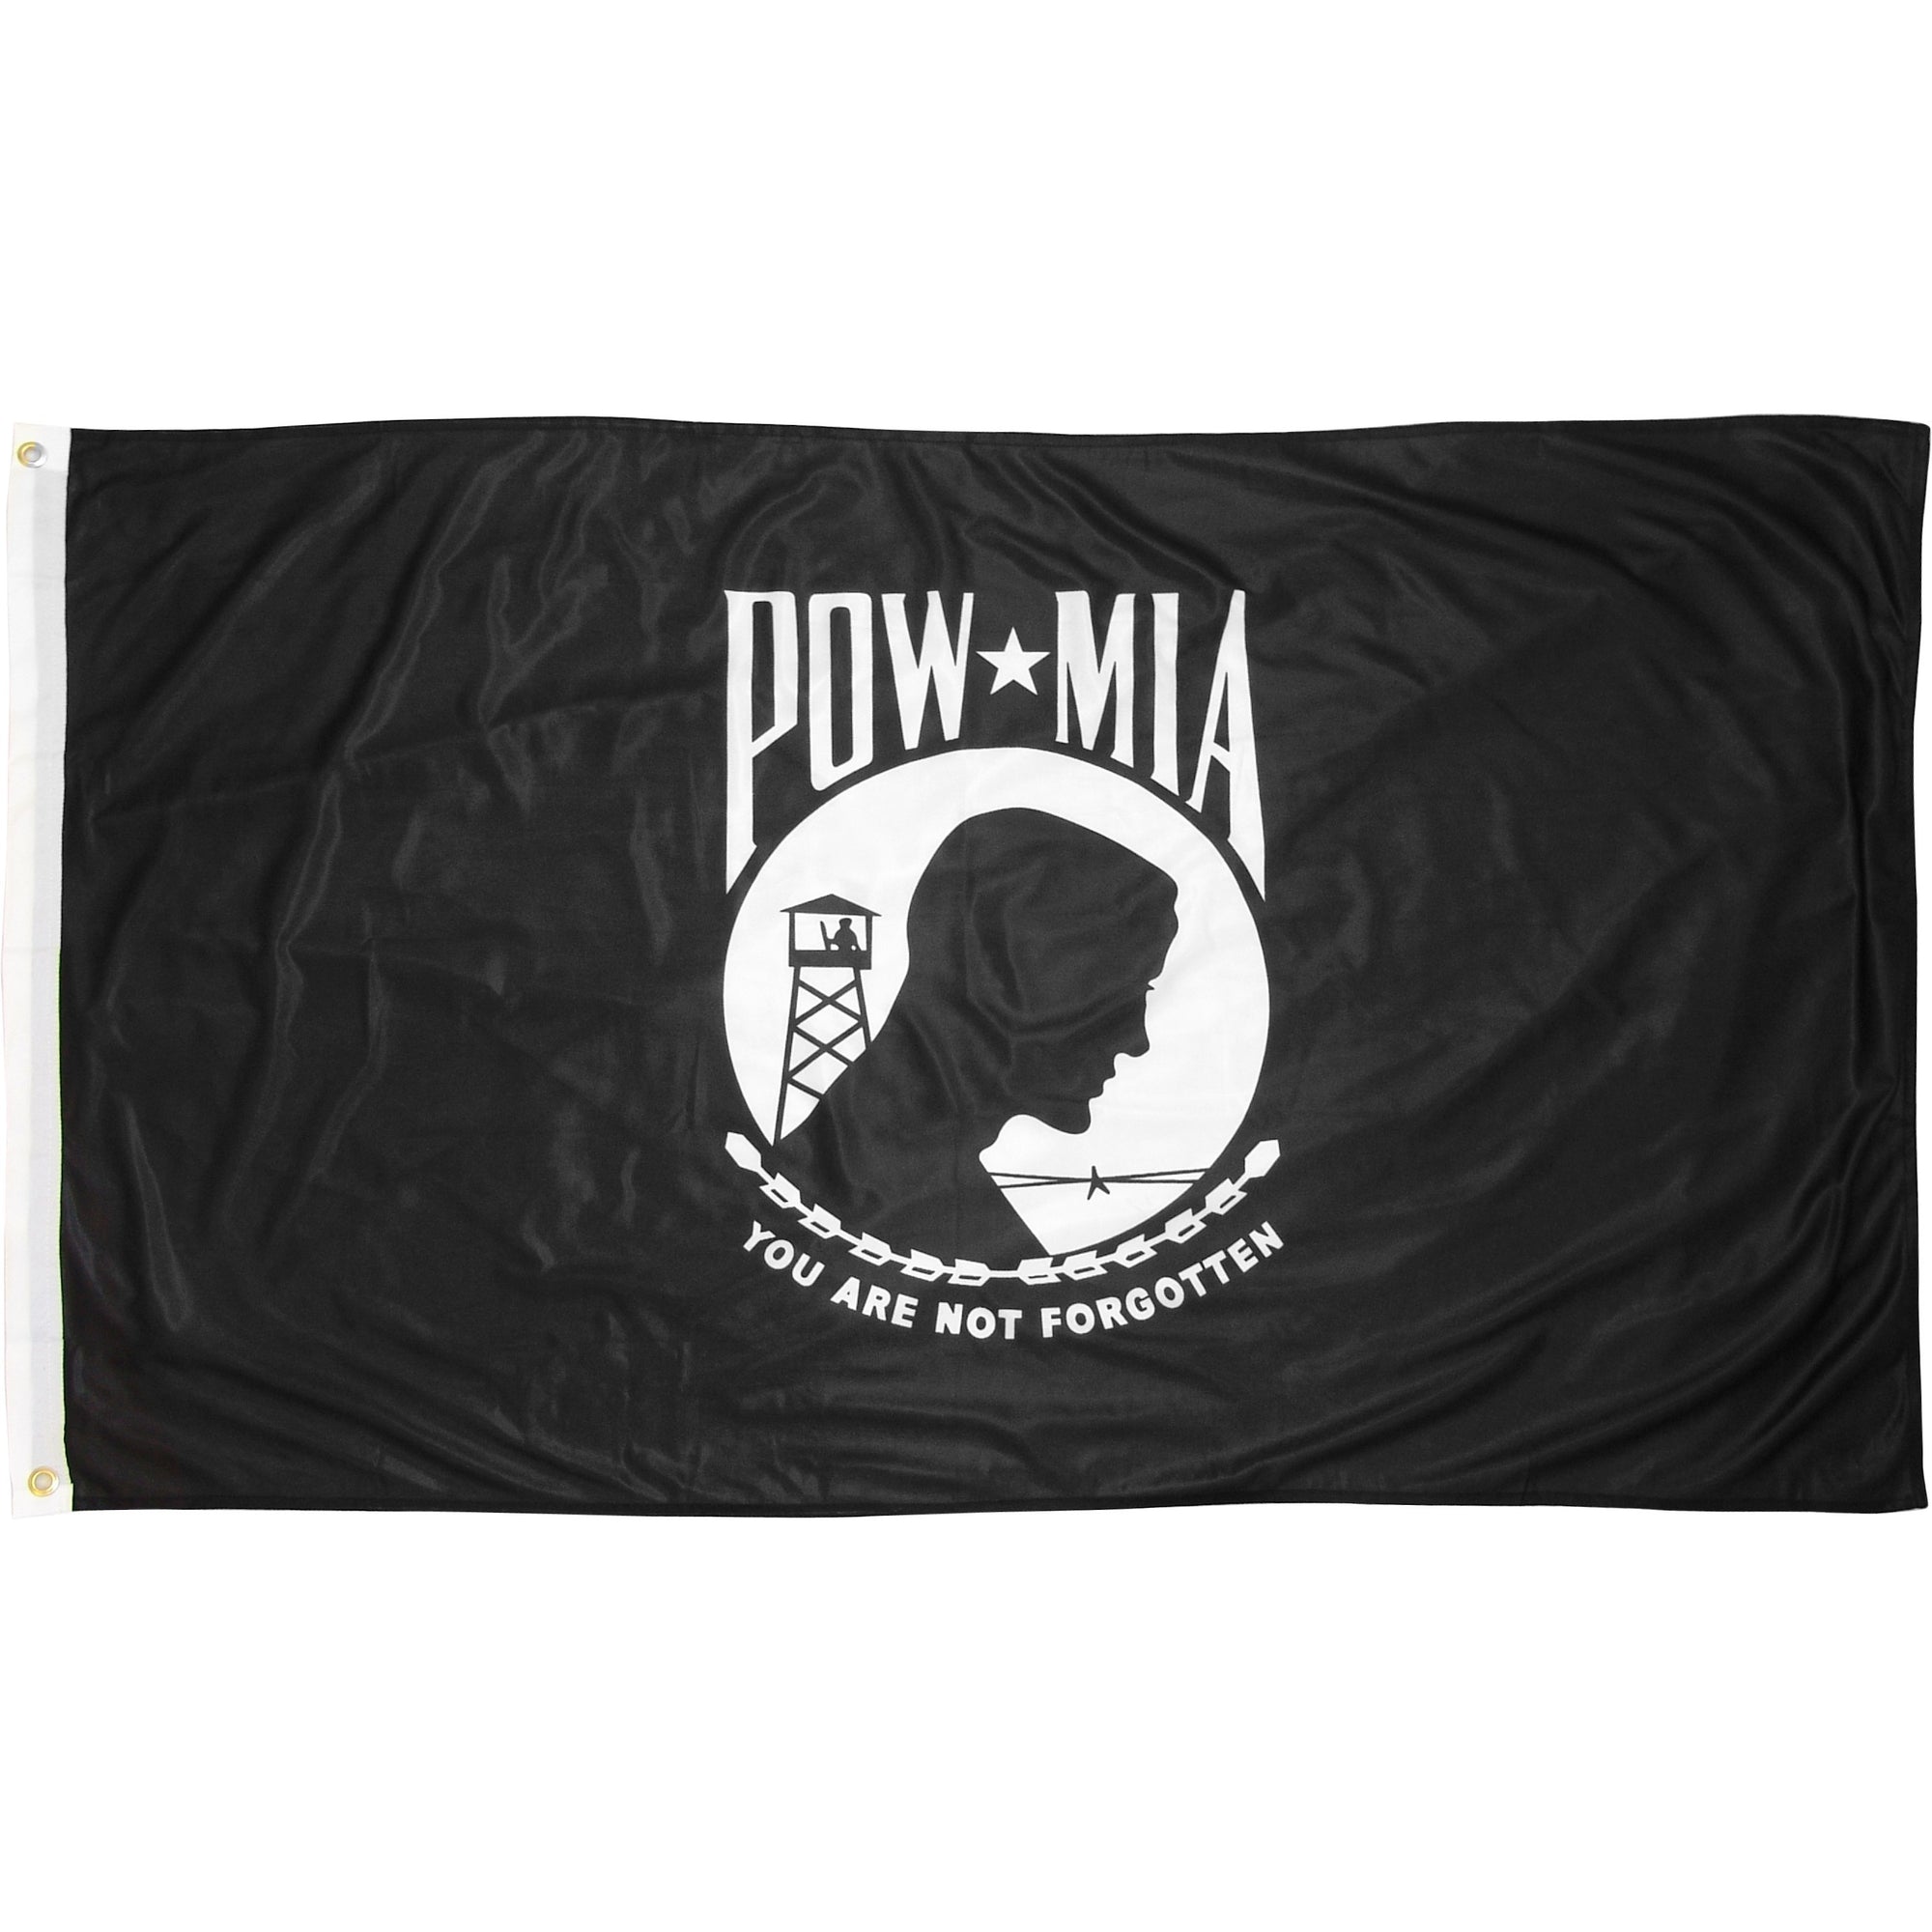 Eder POW-MIA 5' x 8' Outdoor Nylon Flags